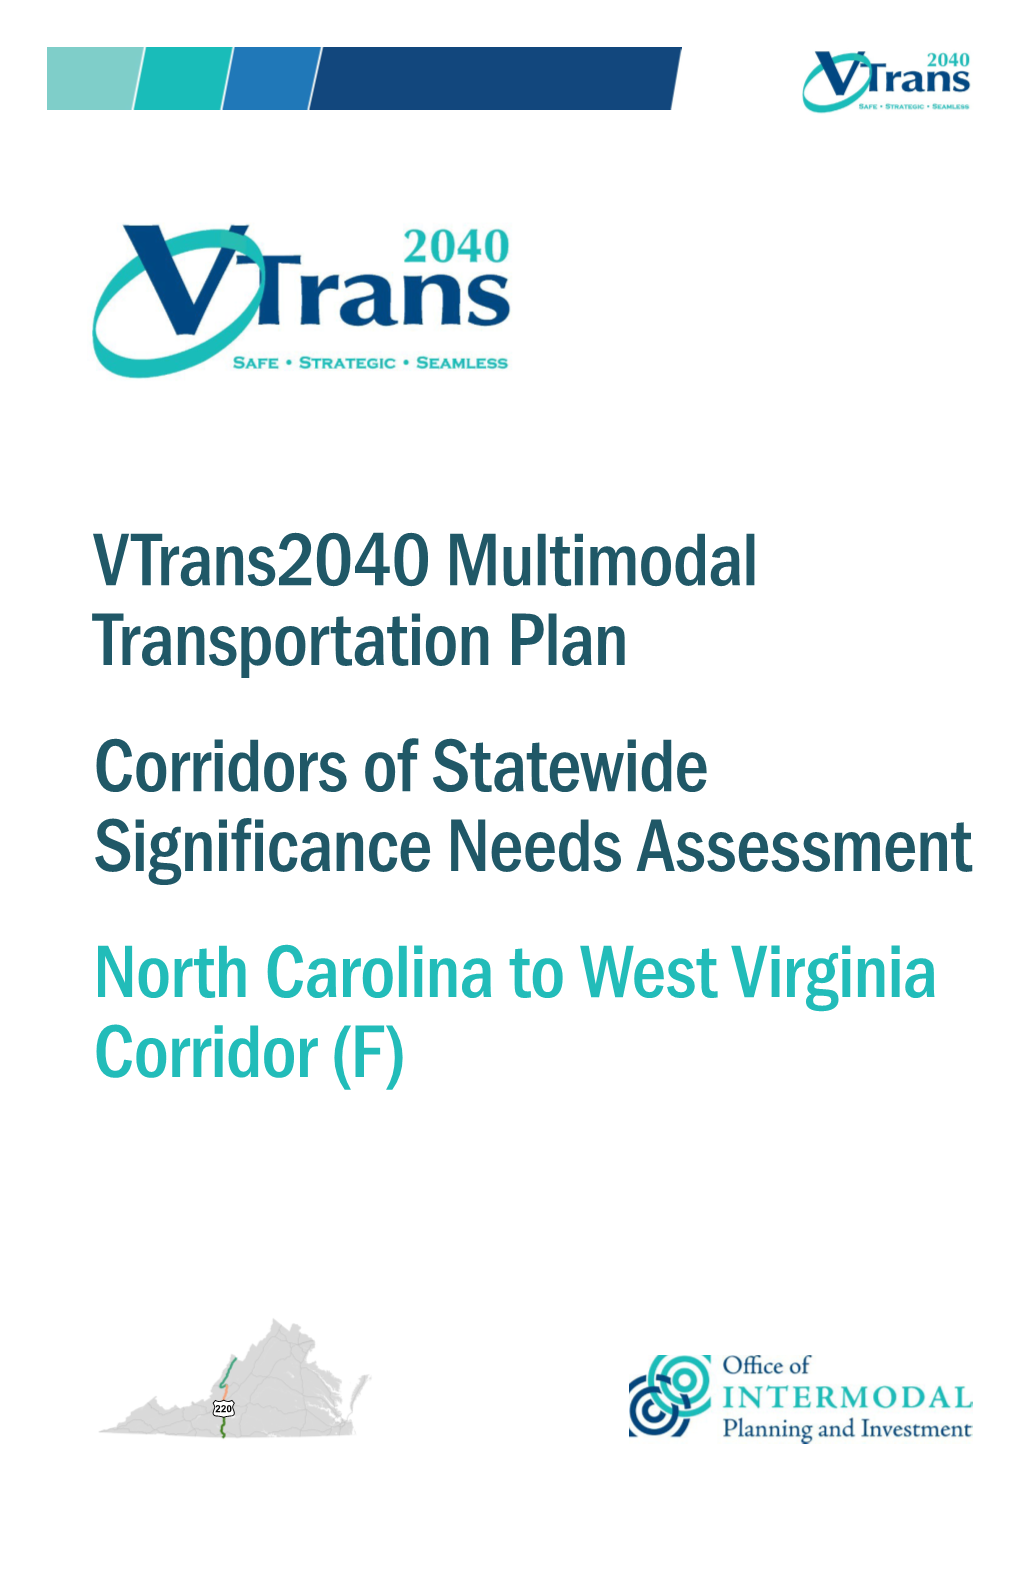 North Carolina to West Virginia Corridor (F)